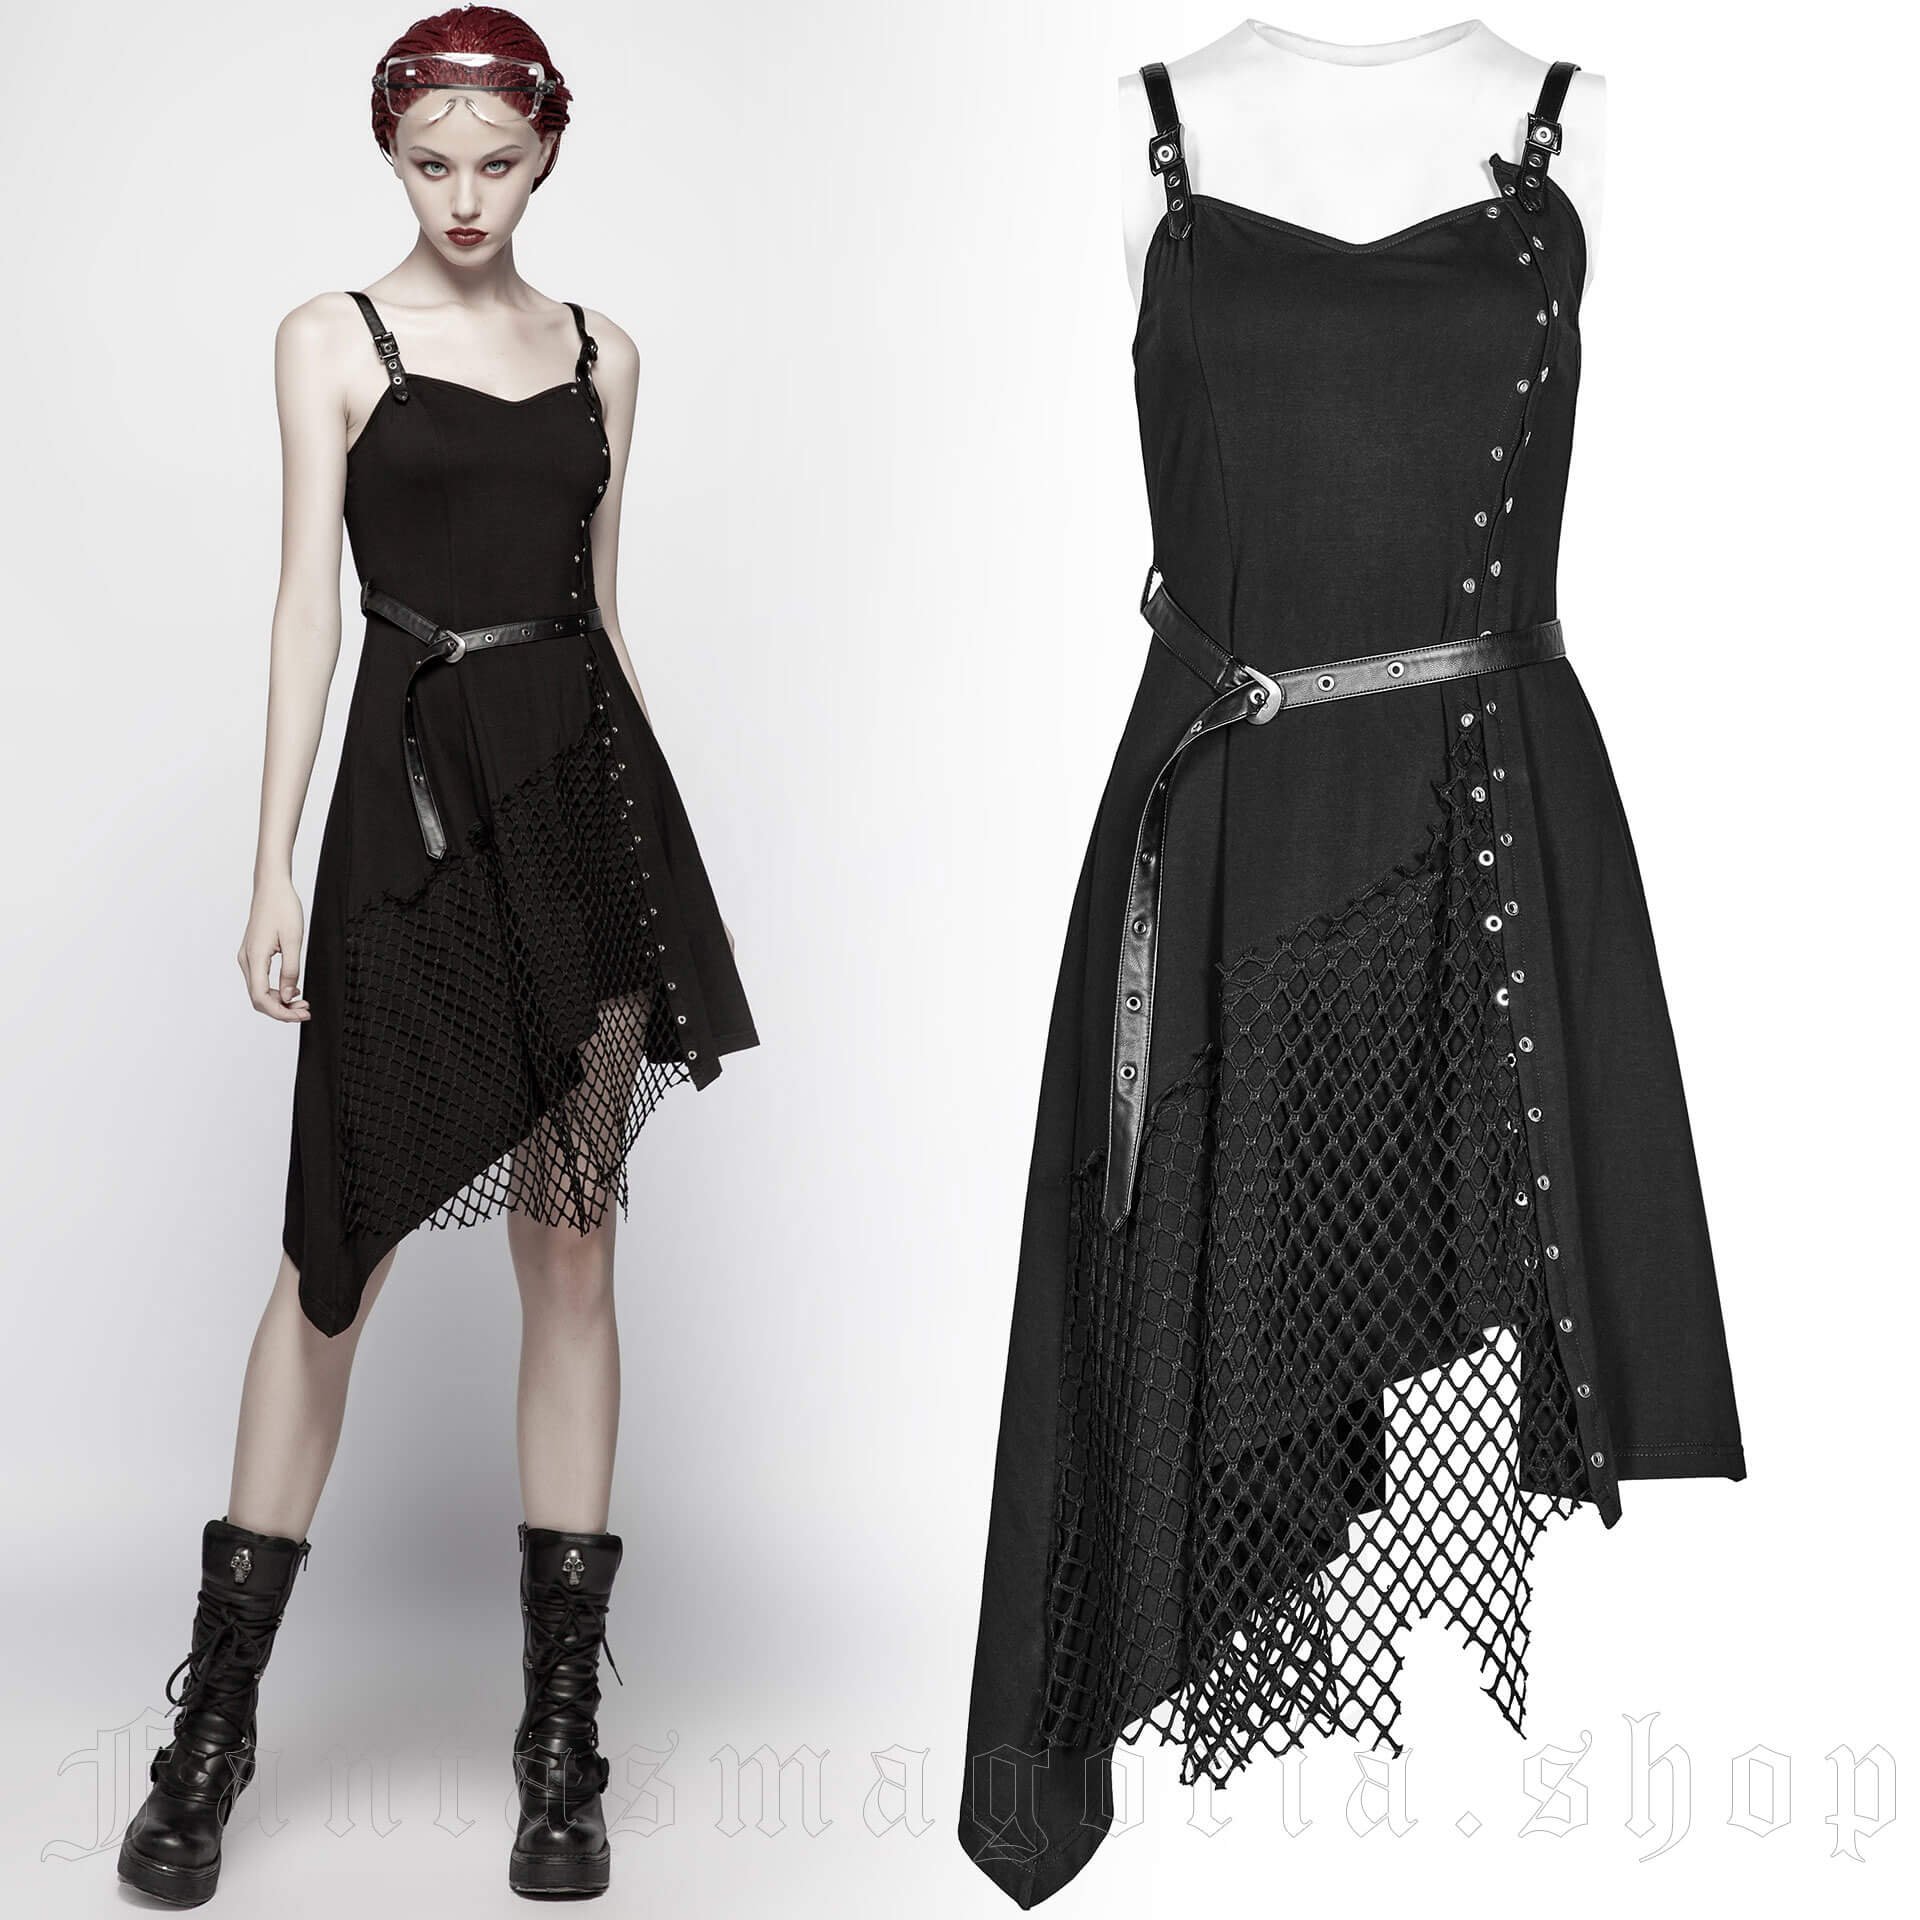 Morphia Black Dress - Punk Rave - OQ-398 1